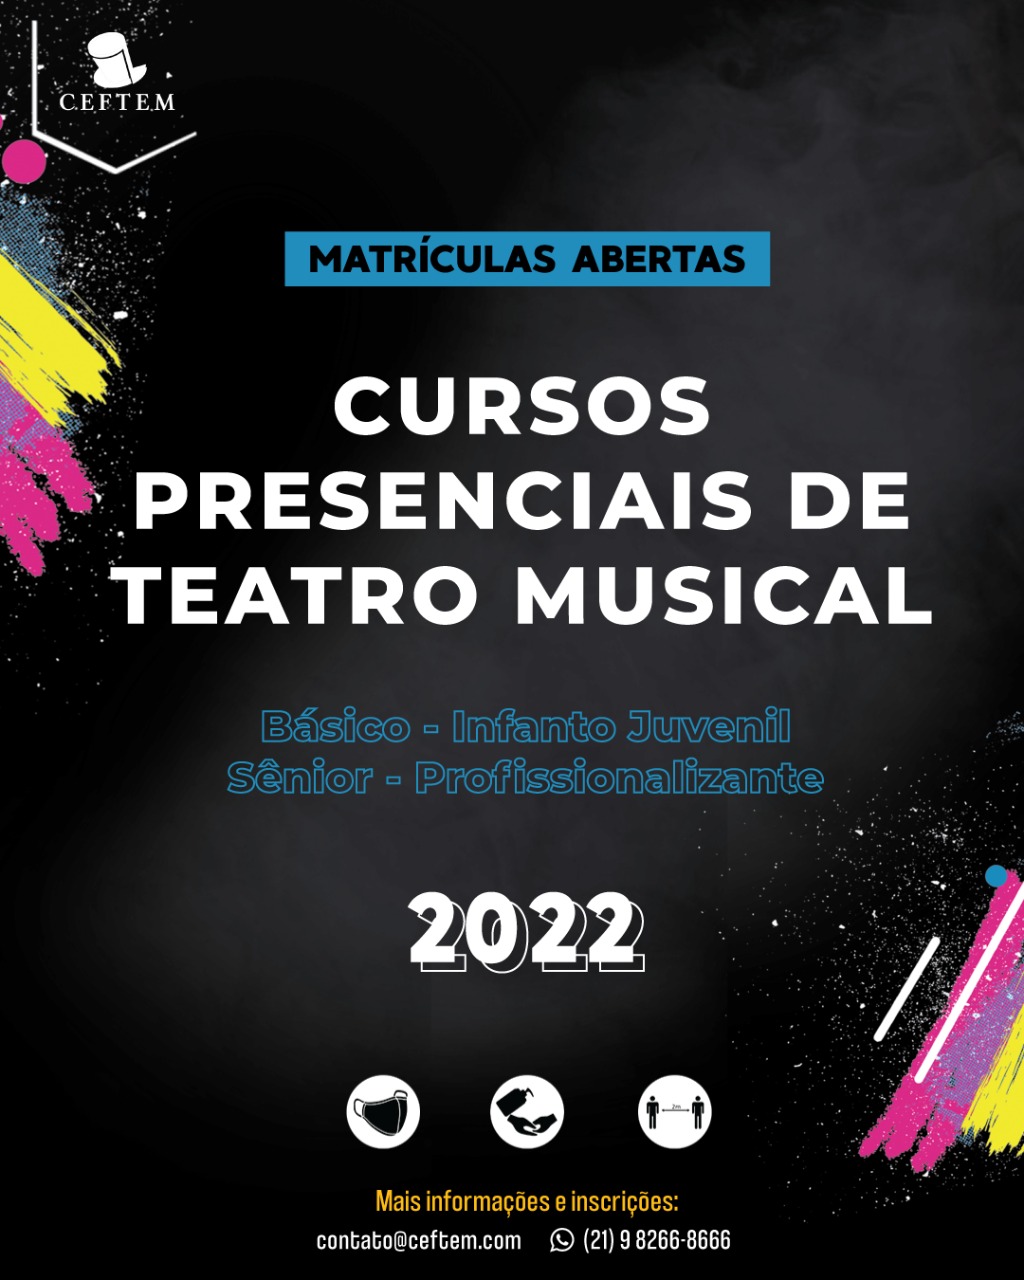 Imagem para Cursos de Teatro Musical 2022 - Matrículas Abertas